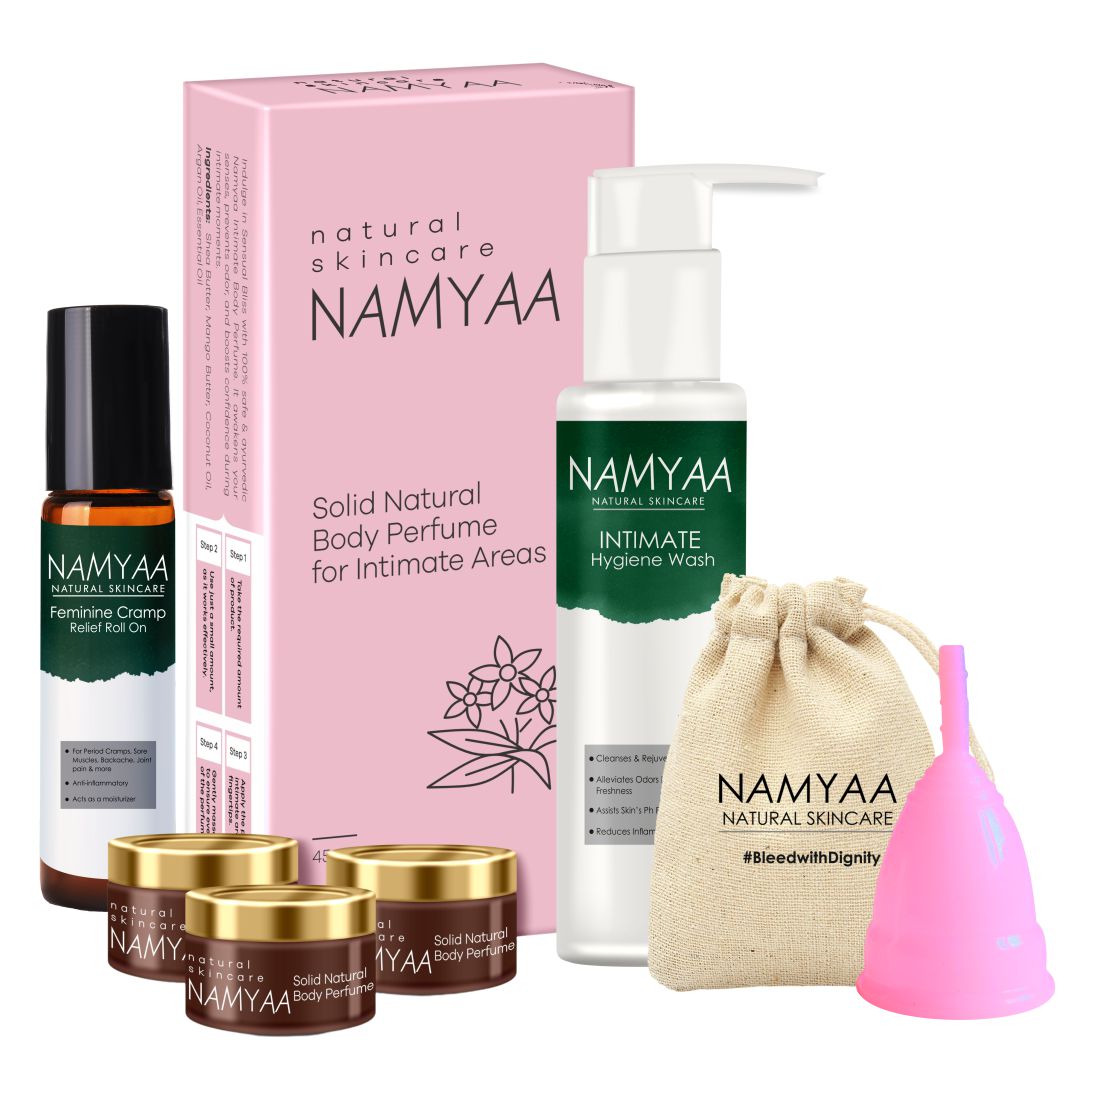 Namyaa Period Care Kit